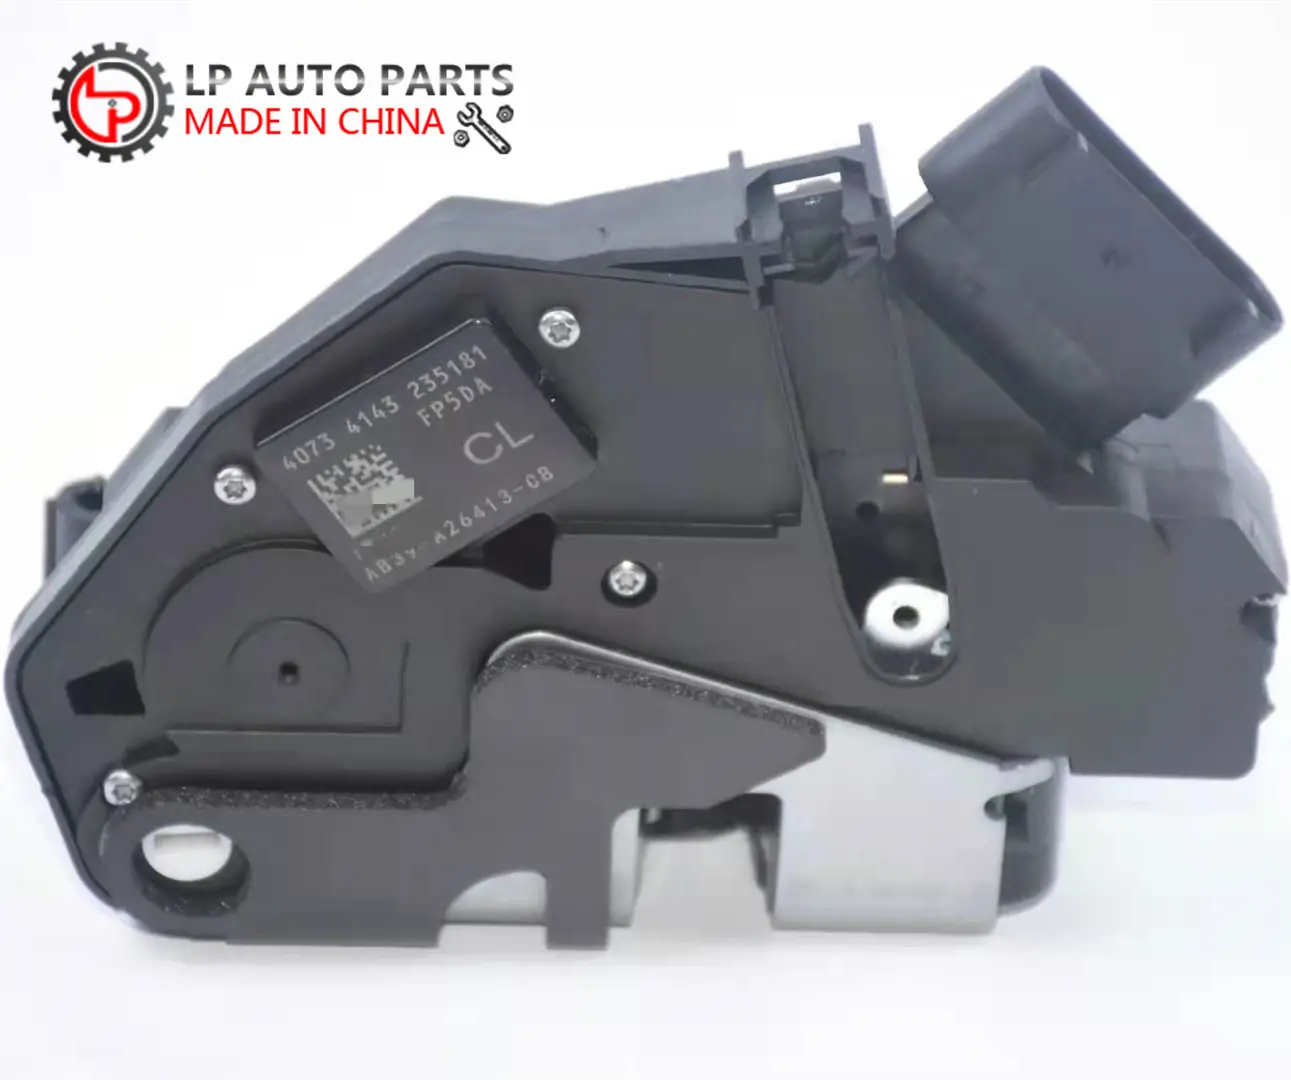 Vendita di motori per Auto ricambi Auto automobilistici attuatore serratura porta Auto per Ford Ranger T6 C-MAX II Mazda BT50